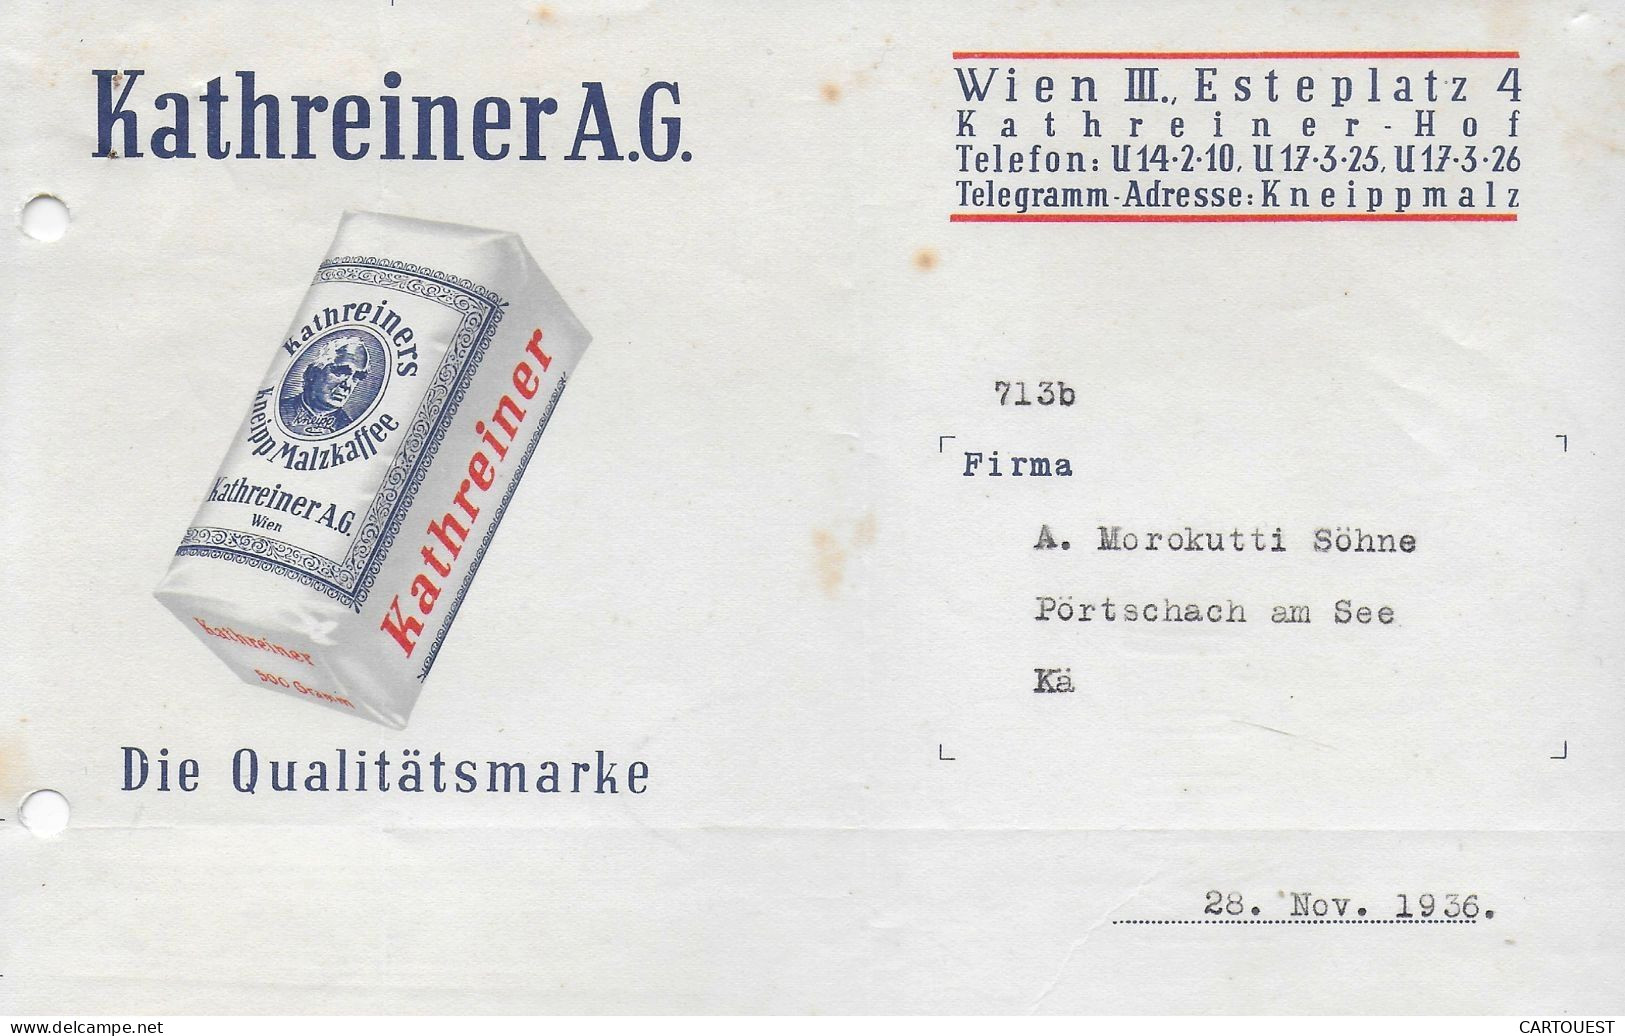 WIEN,1936 KATHREINER A.G. Wien III Esteplatz 4 KNEIPP MALZKAFFE - Österreich